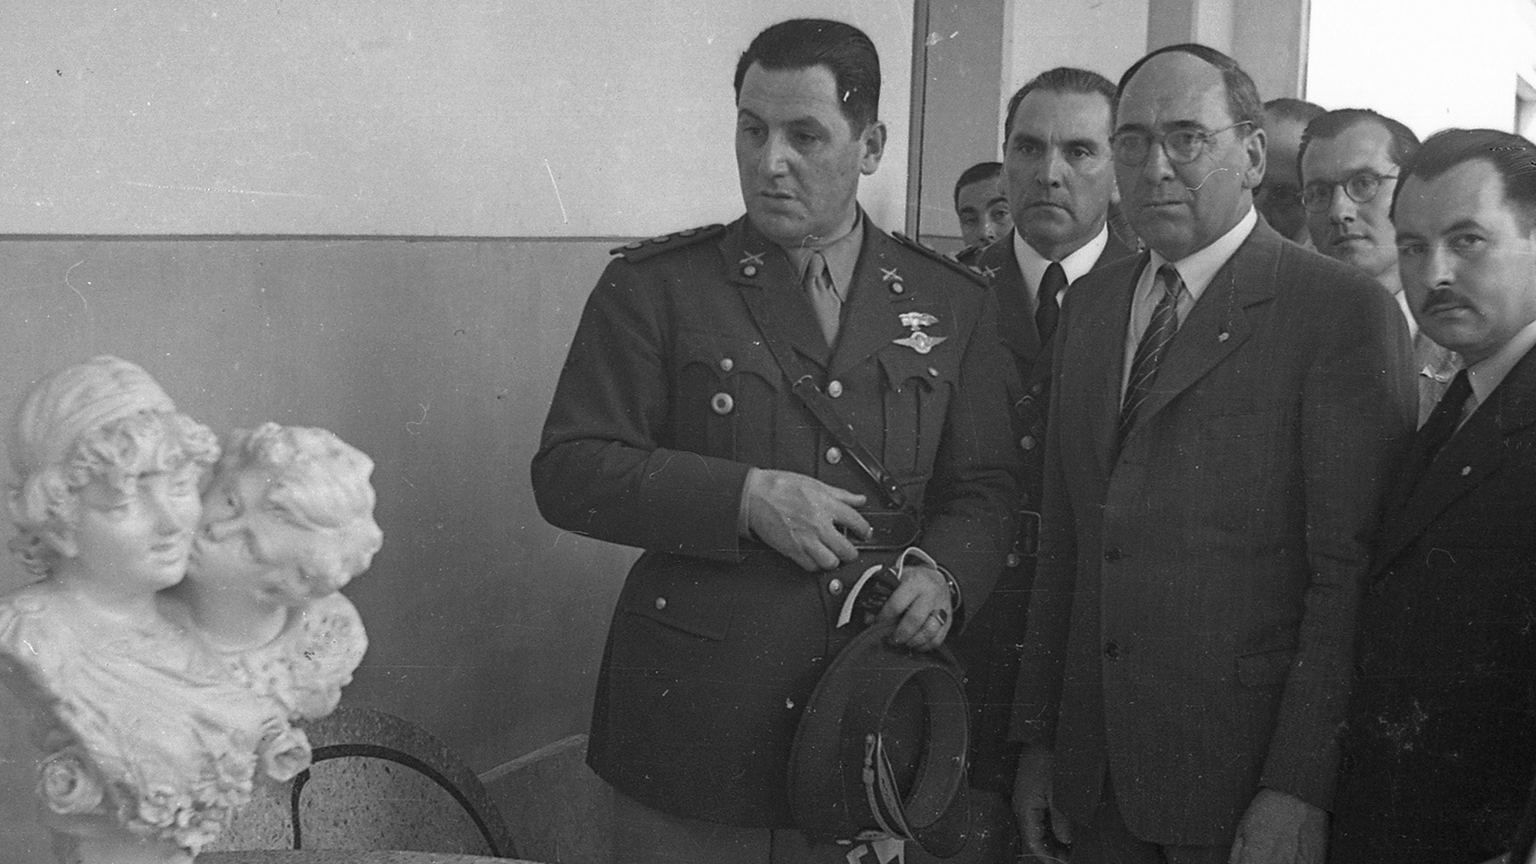 El archivo de Alberto Haylli: la historia argentina a través de Junín con cientos de fotos inéditas de Perón, Evita y el radicalismo